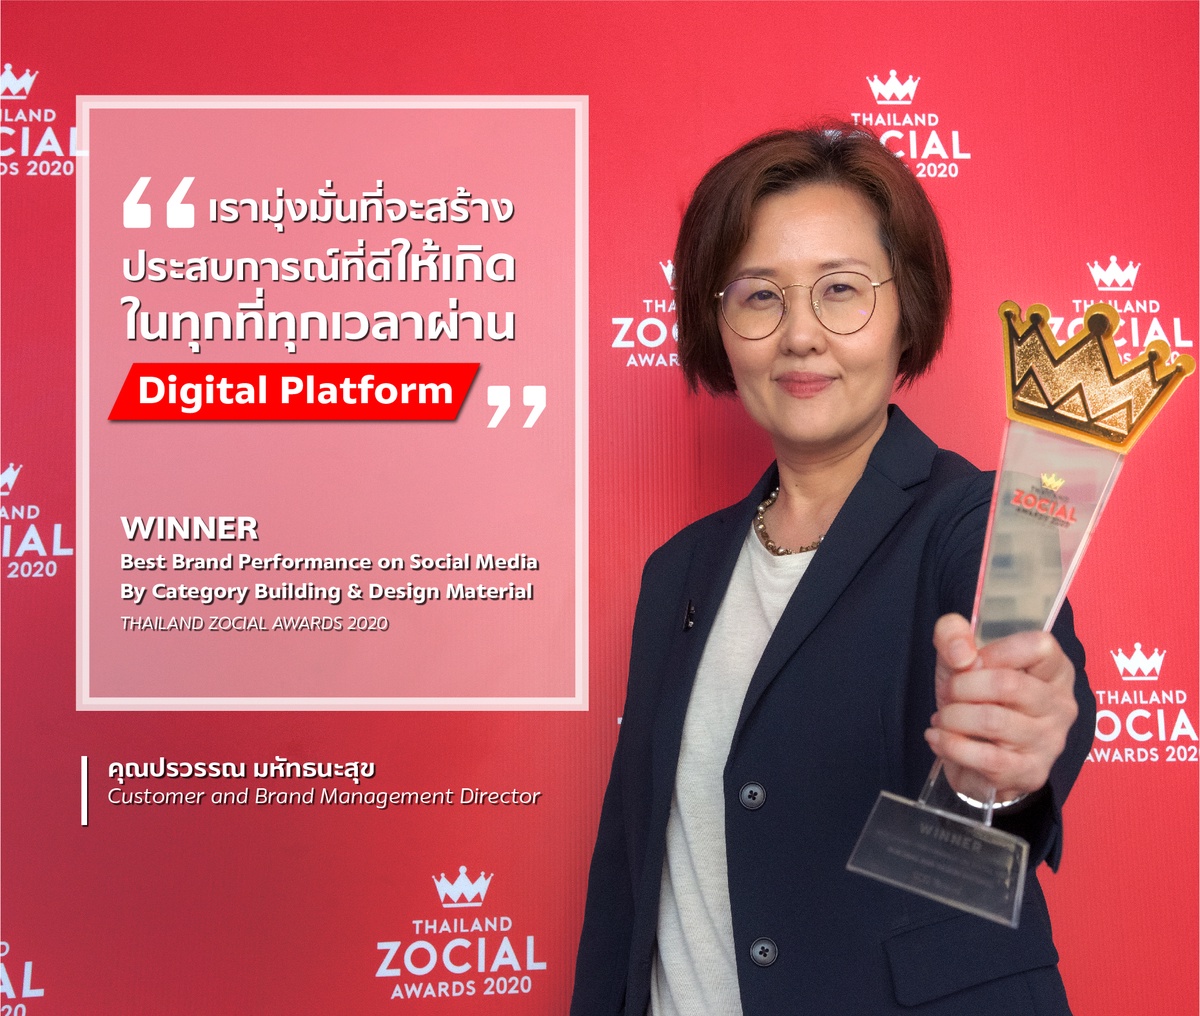 เอสซีจี คว้ารางวัลใหญ่ สร้างสรรค์ผลงานบนโซเชียลมีเดียยอดเยี่ยมที่สุด ในกลุ่มธุรกิจวัสดุก่อสร้าง จากเวที Thailand Zocial Awards